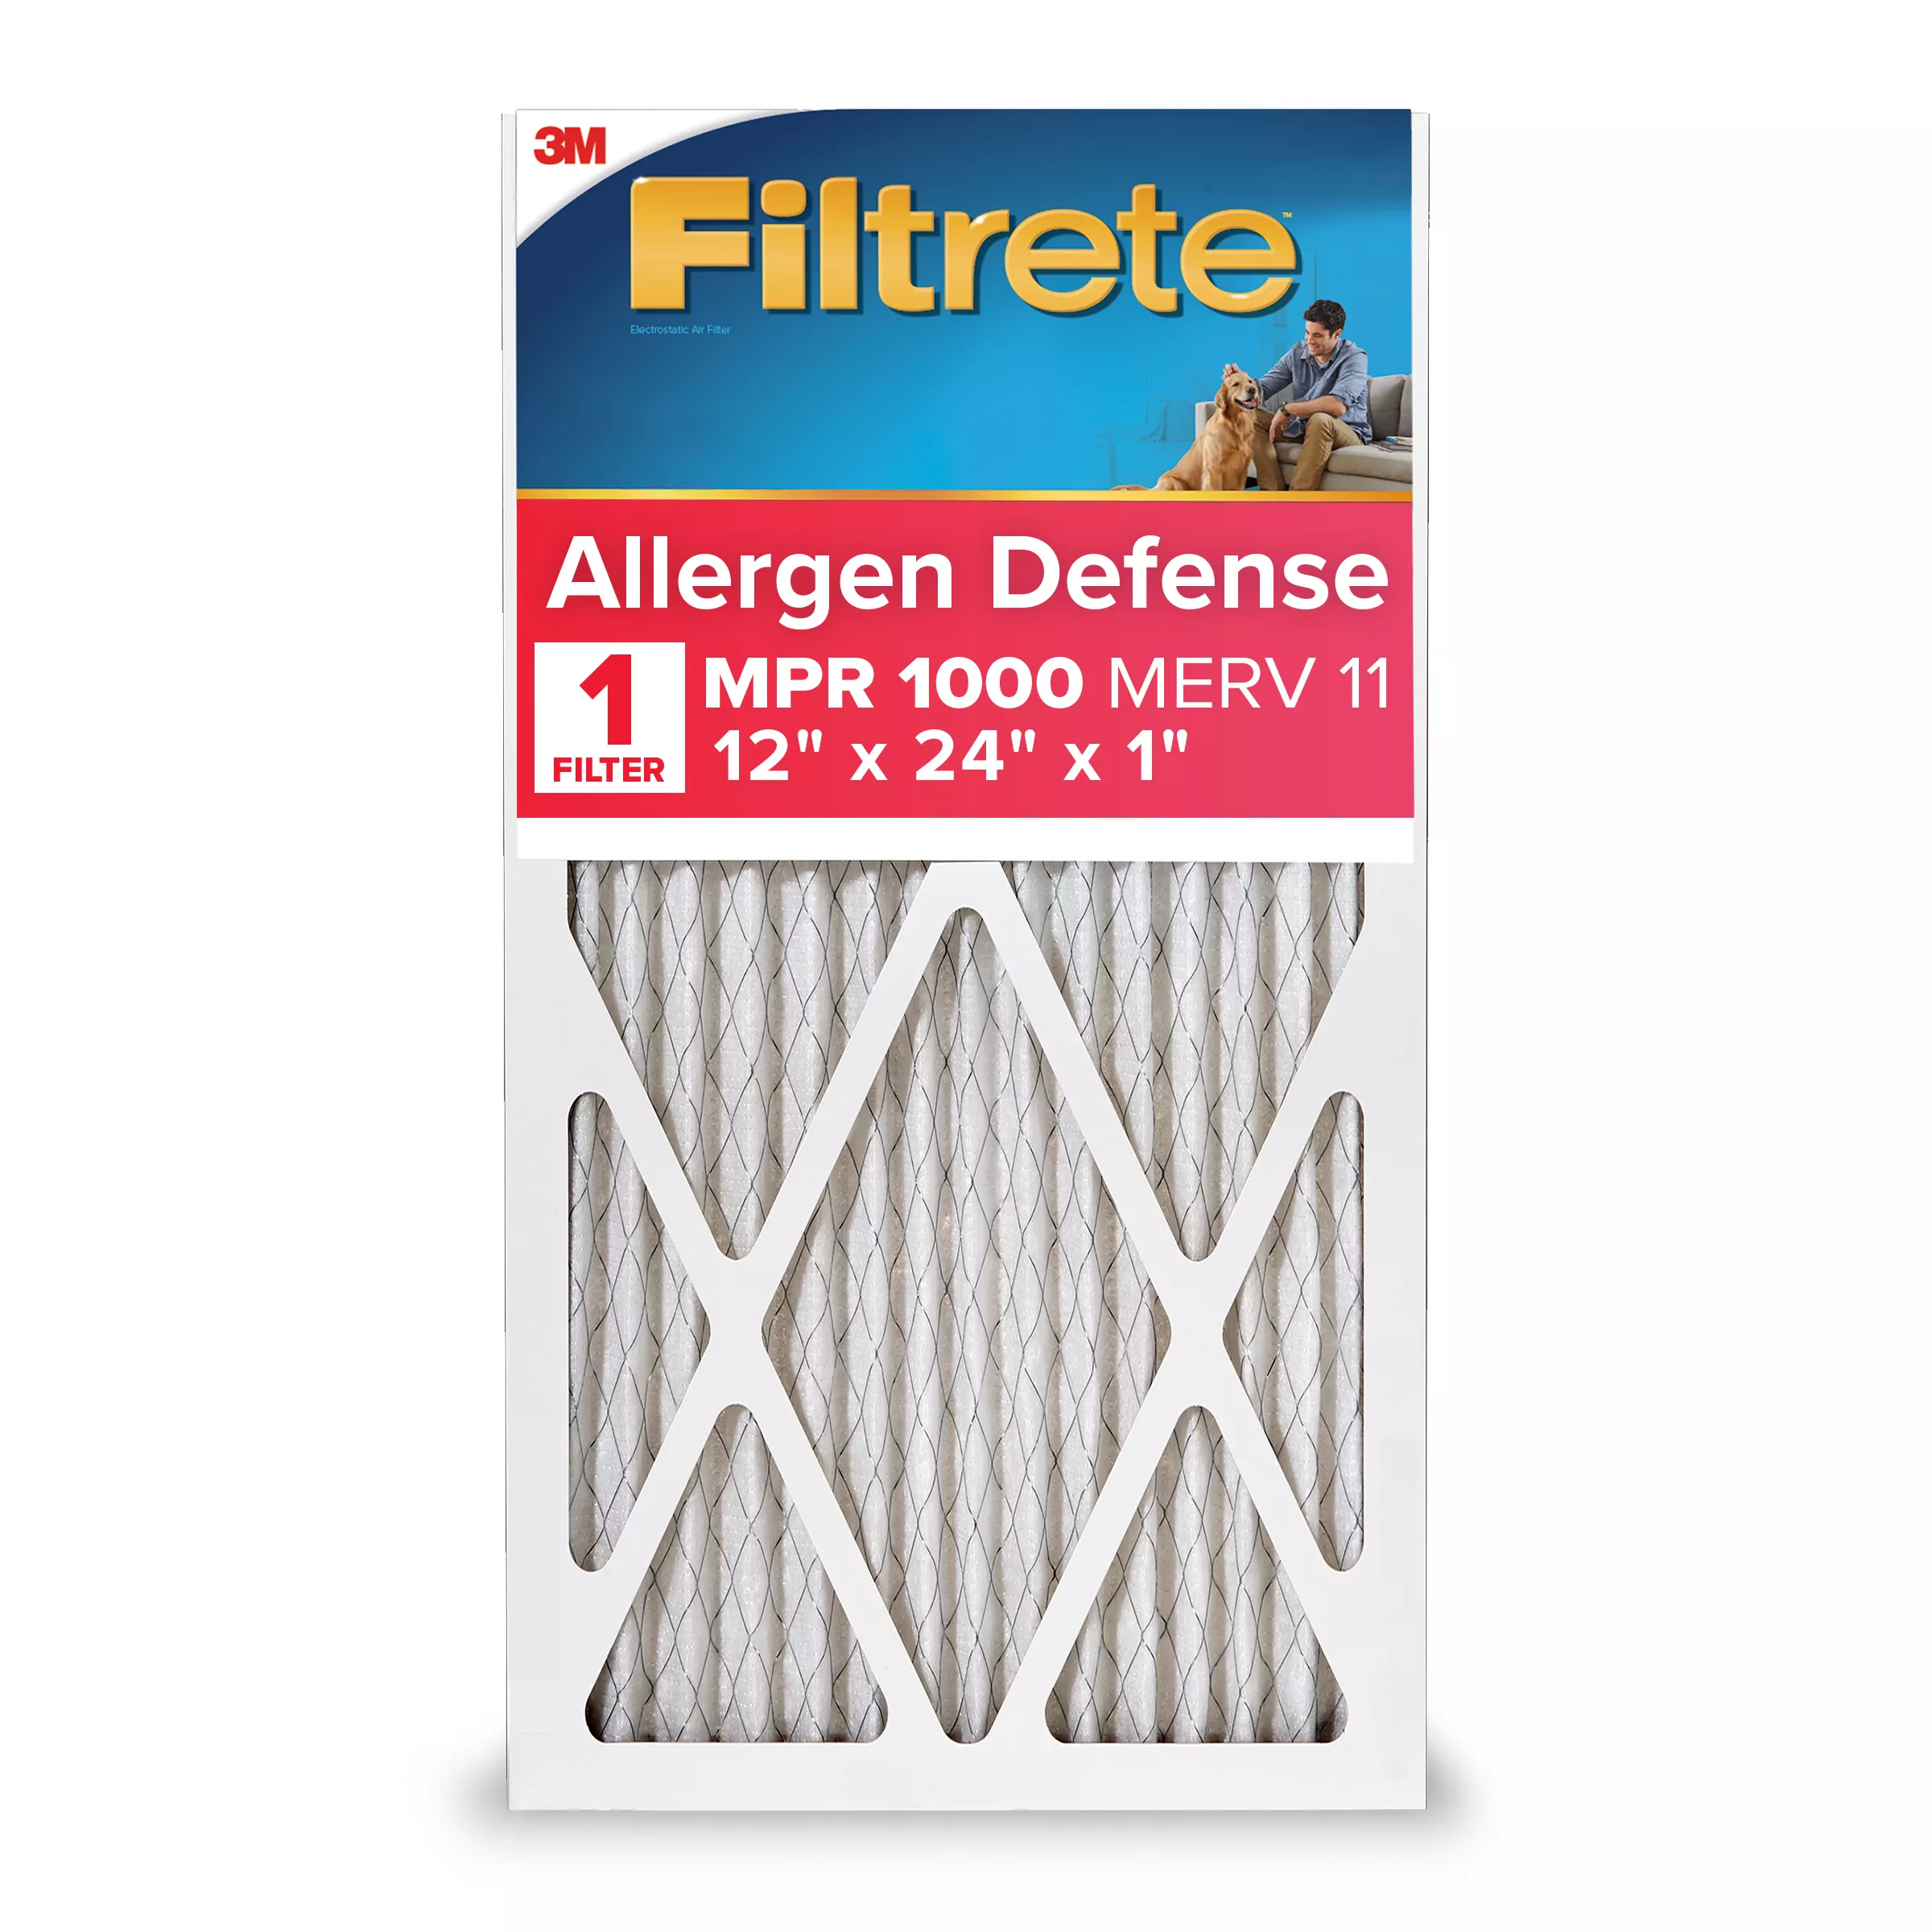 Filtrete™ Allergen Defense Air Filter, 1000 MPR, 9820-4, 12 in x 24 in x 1 in (30,4 cm x 60,9 cm x 2,5 cm)